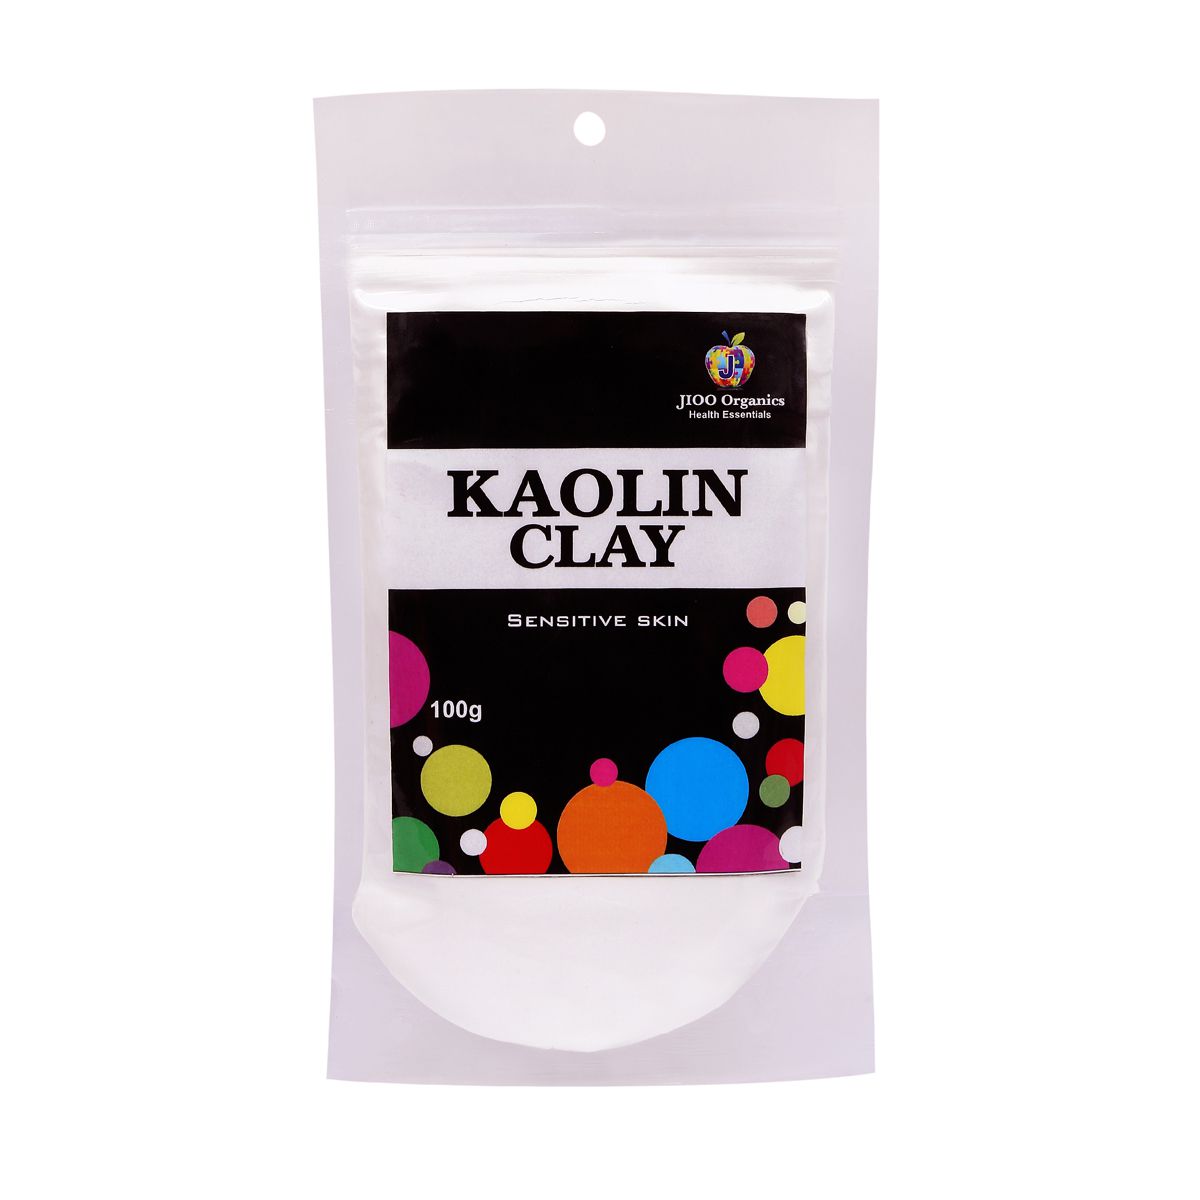 Jioo Organics Kaolin Clay Powder, Cosmetic Grade Face Face Pack 100 gm